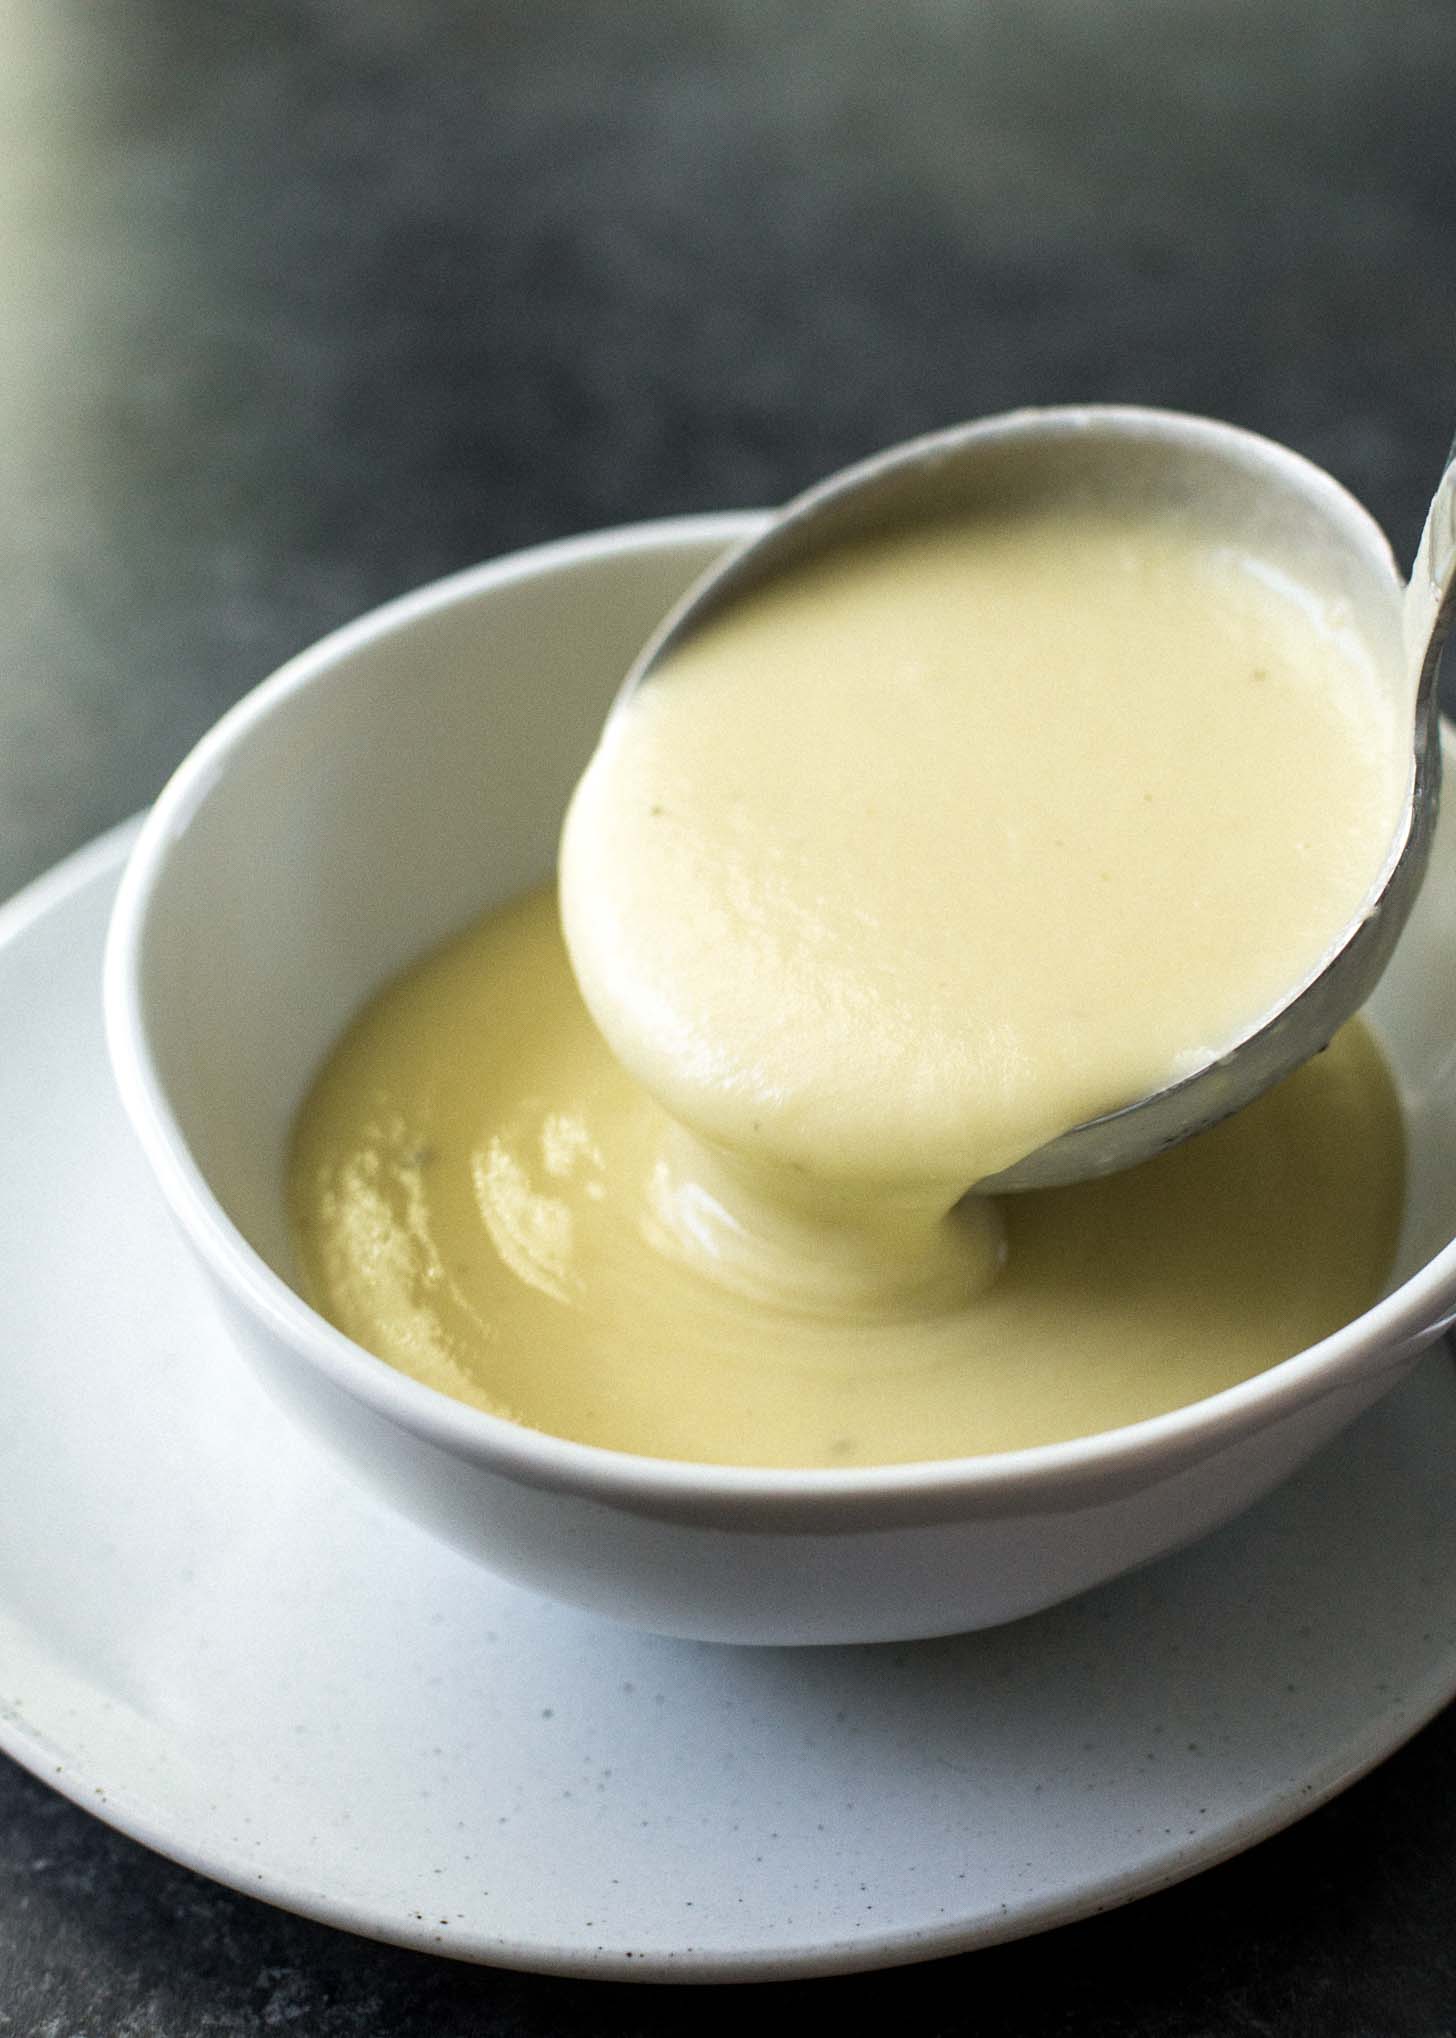 ladling potato leek soup into a white bowl